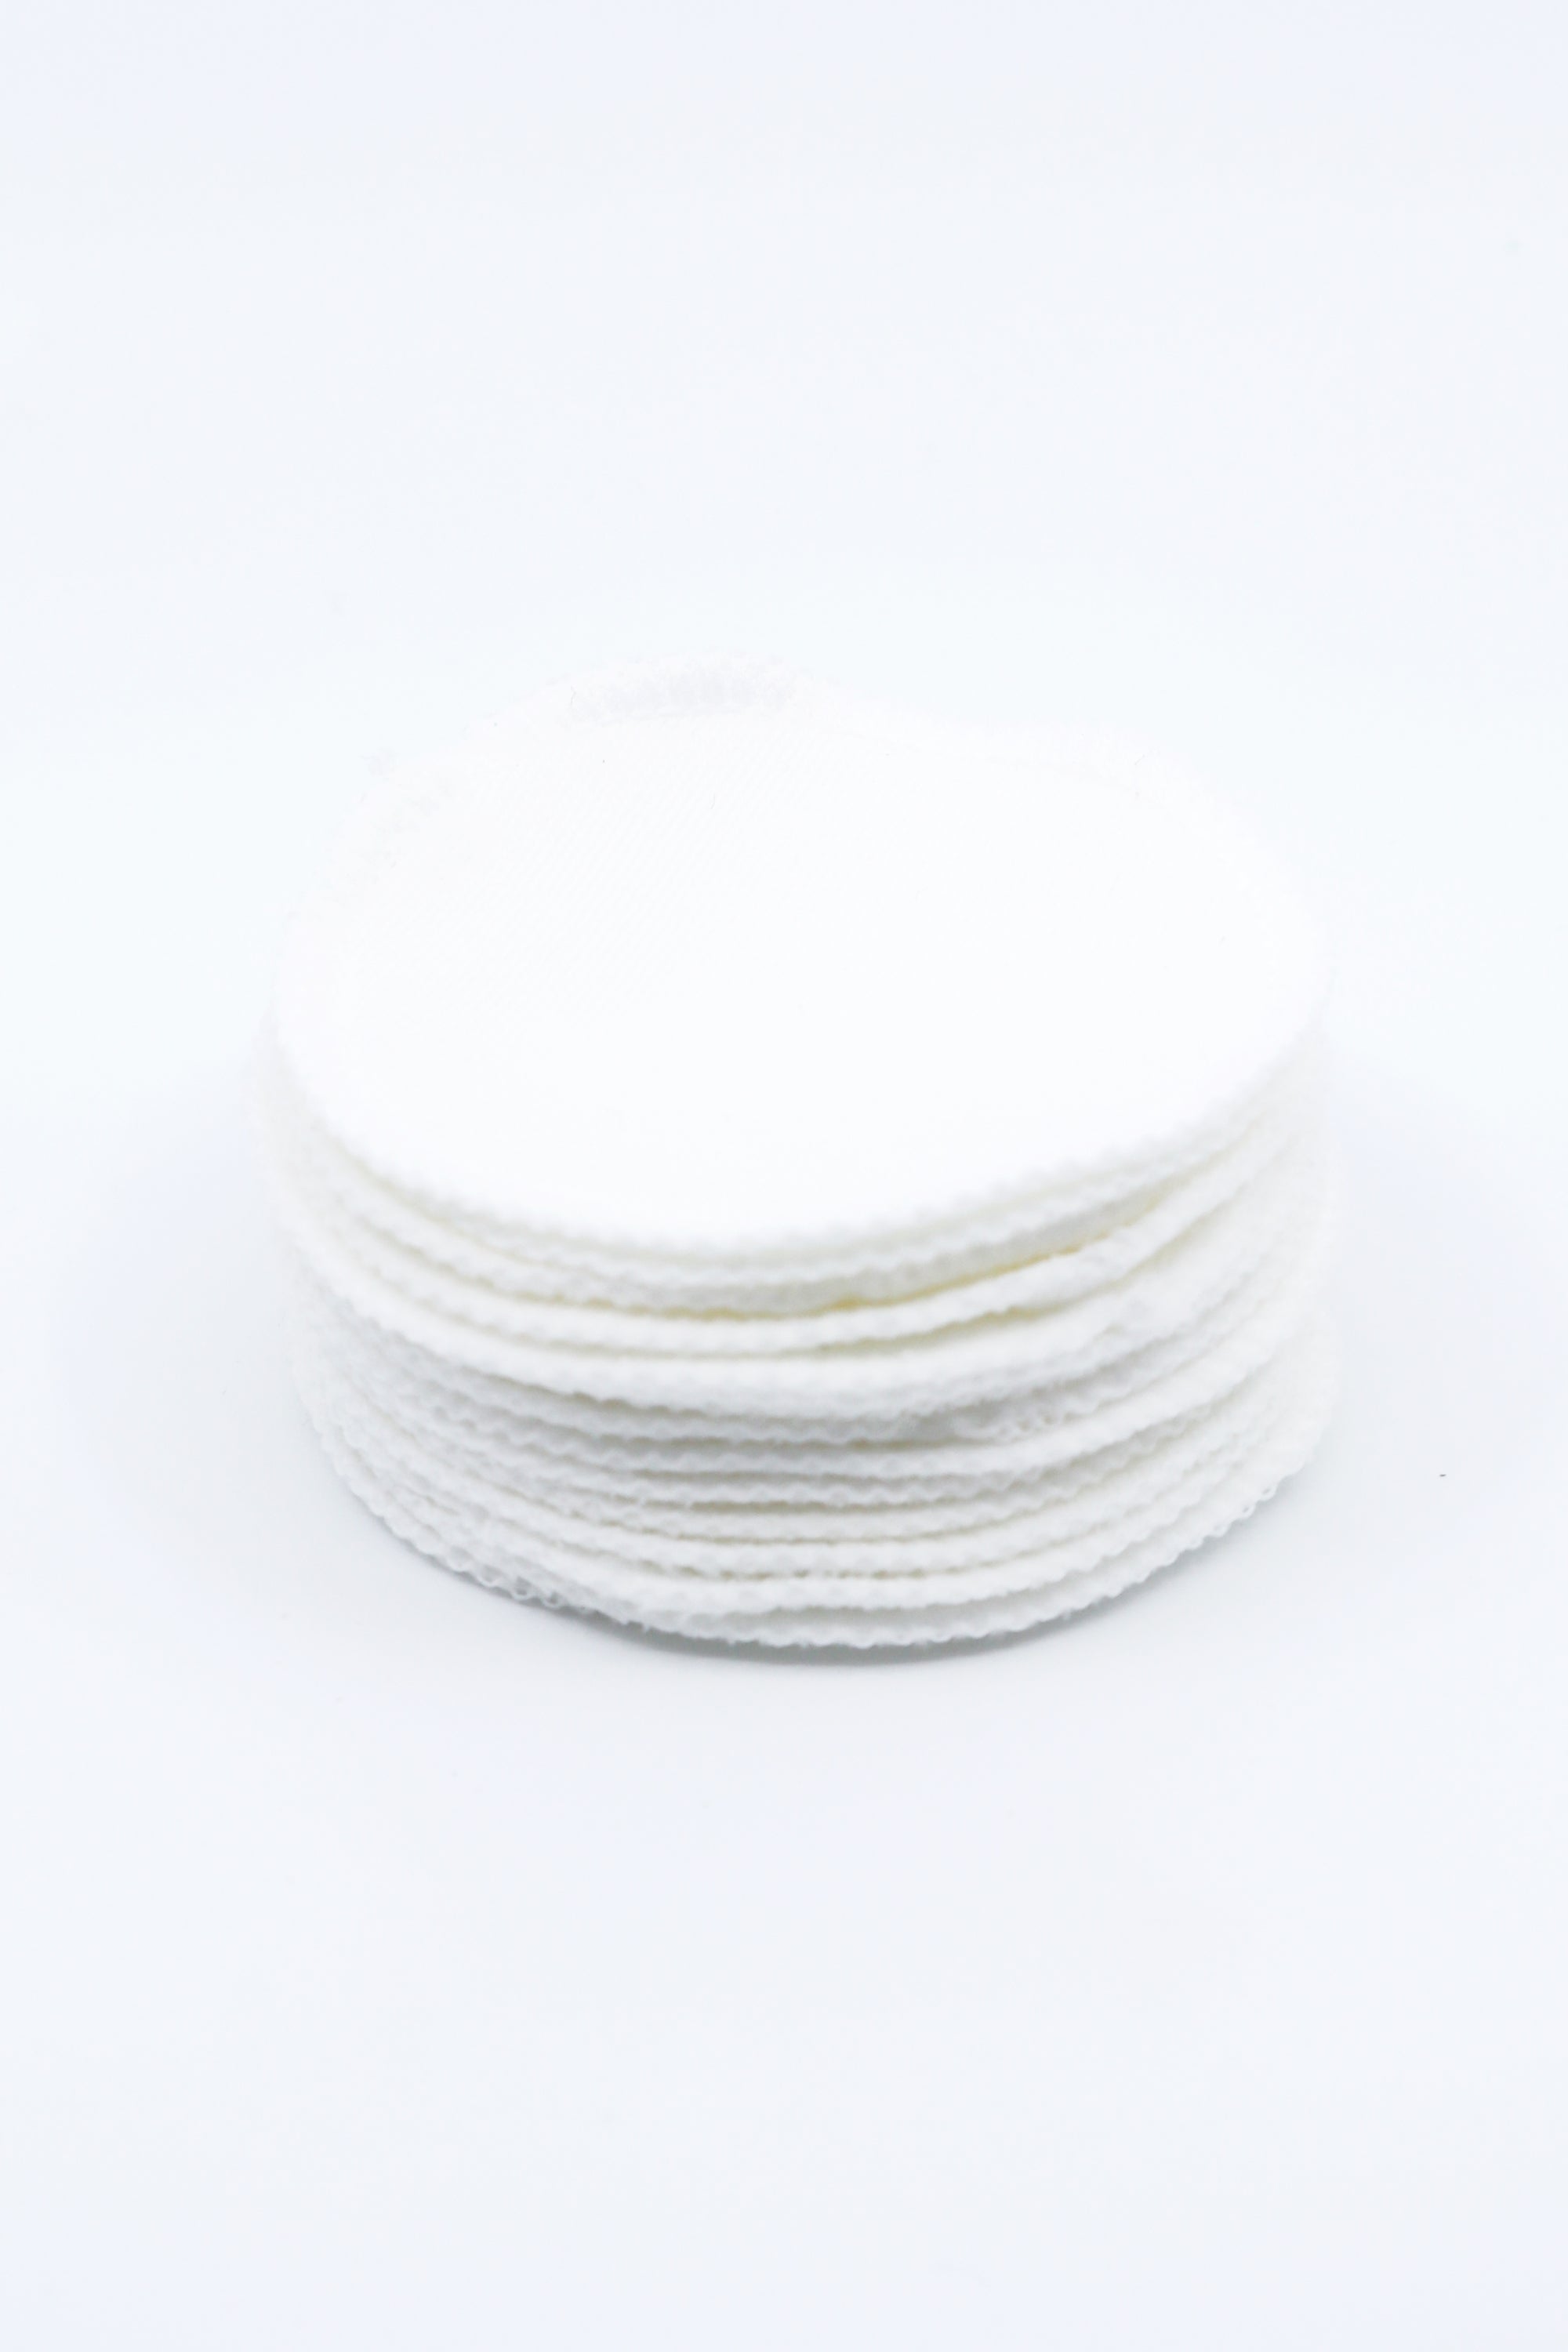 Cotton Rounds - White